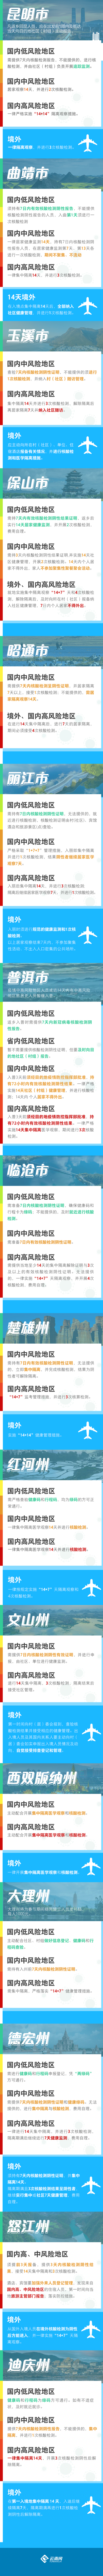 【云图解】事关春节返乡 一图看懂云南16州市疫情防控要求